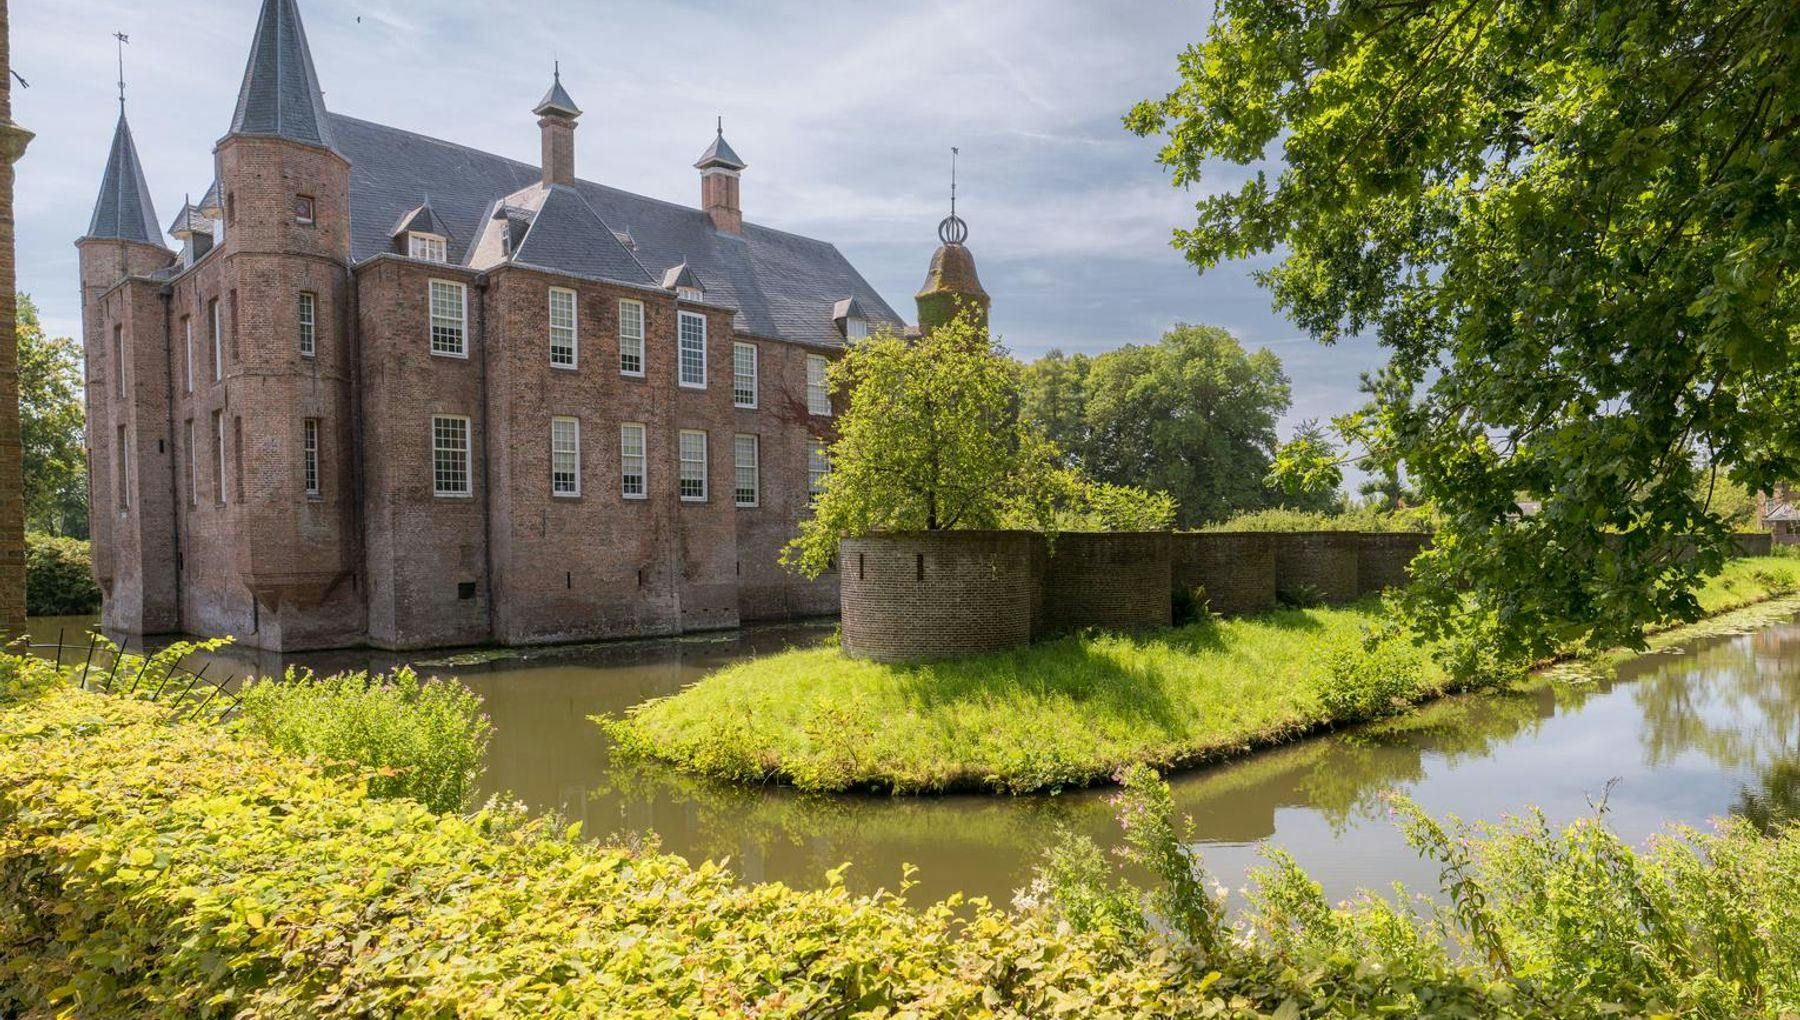 Slot Zuylen is a castle in the village of Oud-Zuilen.